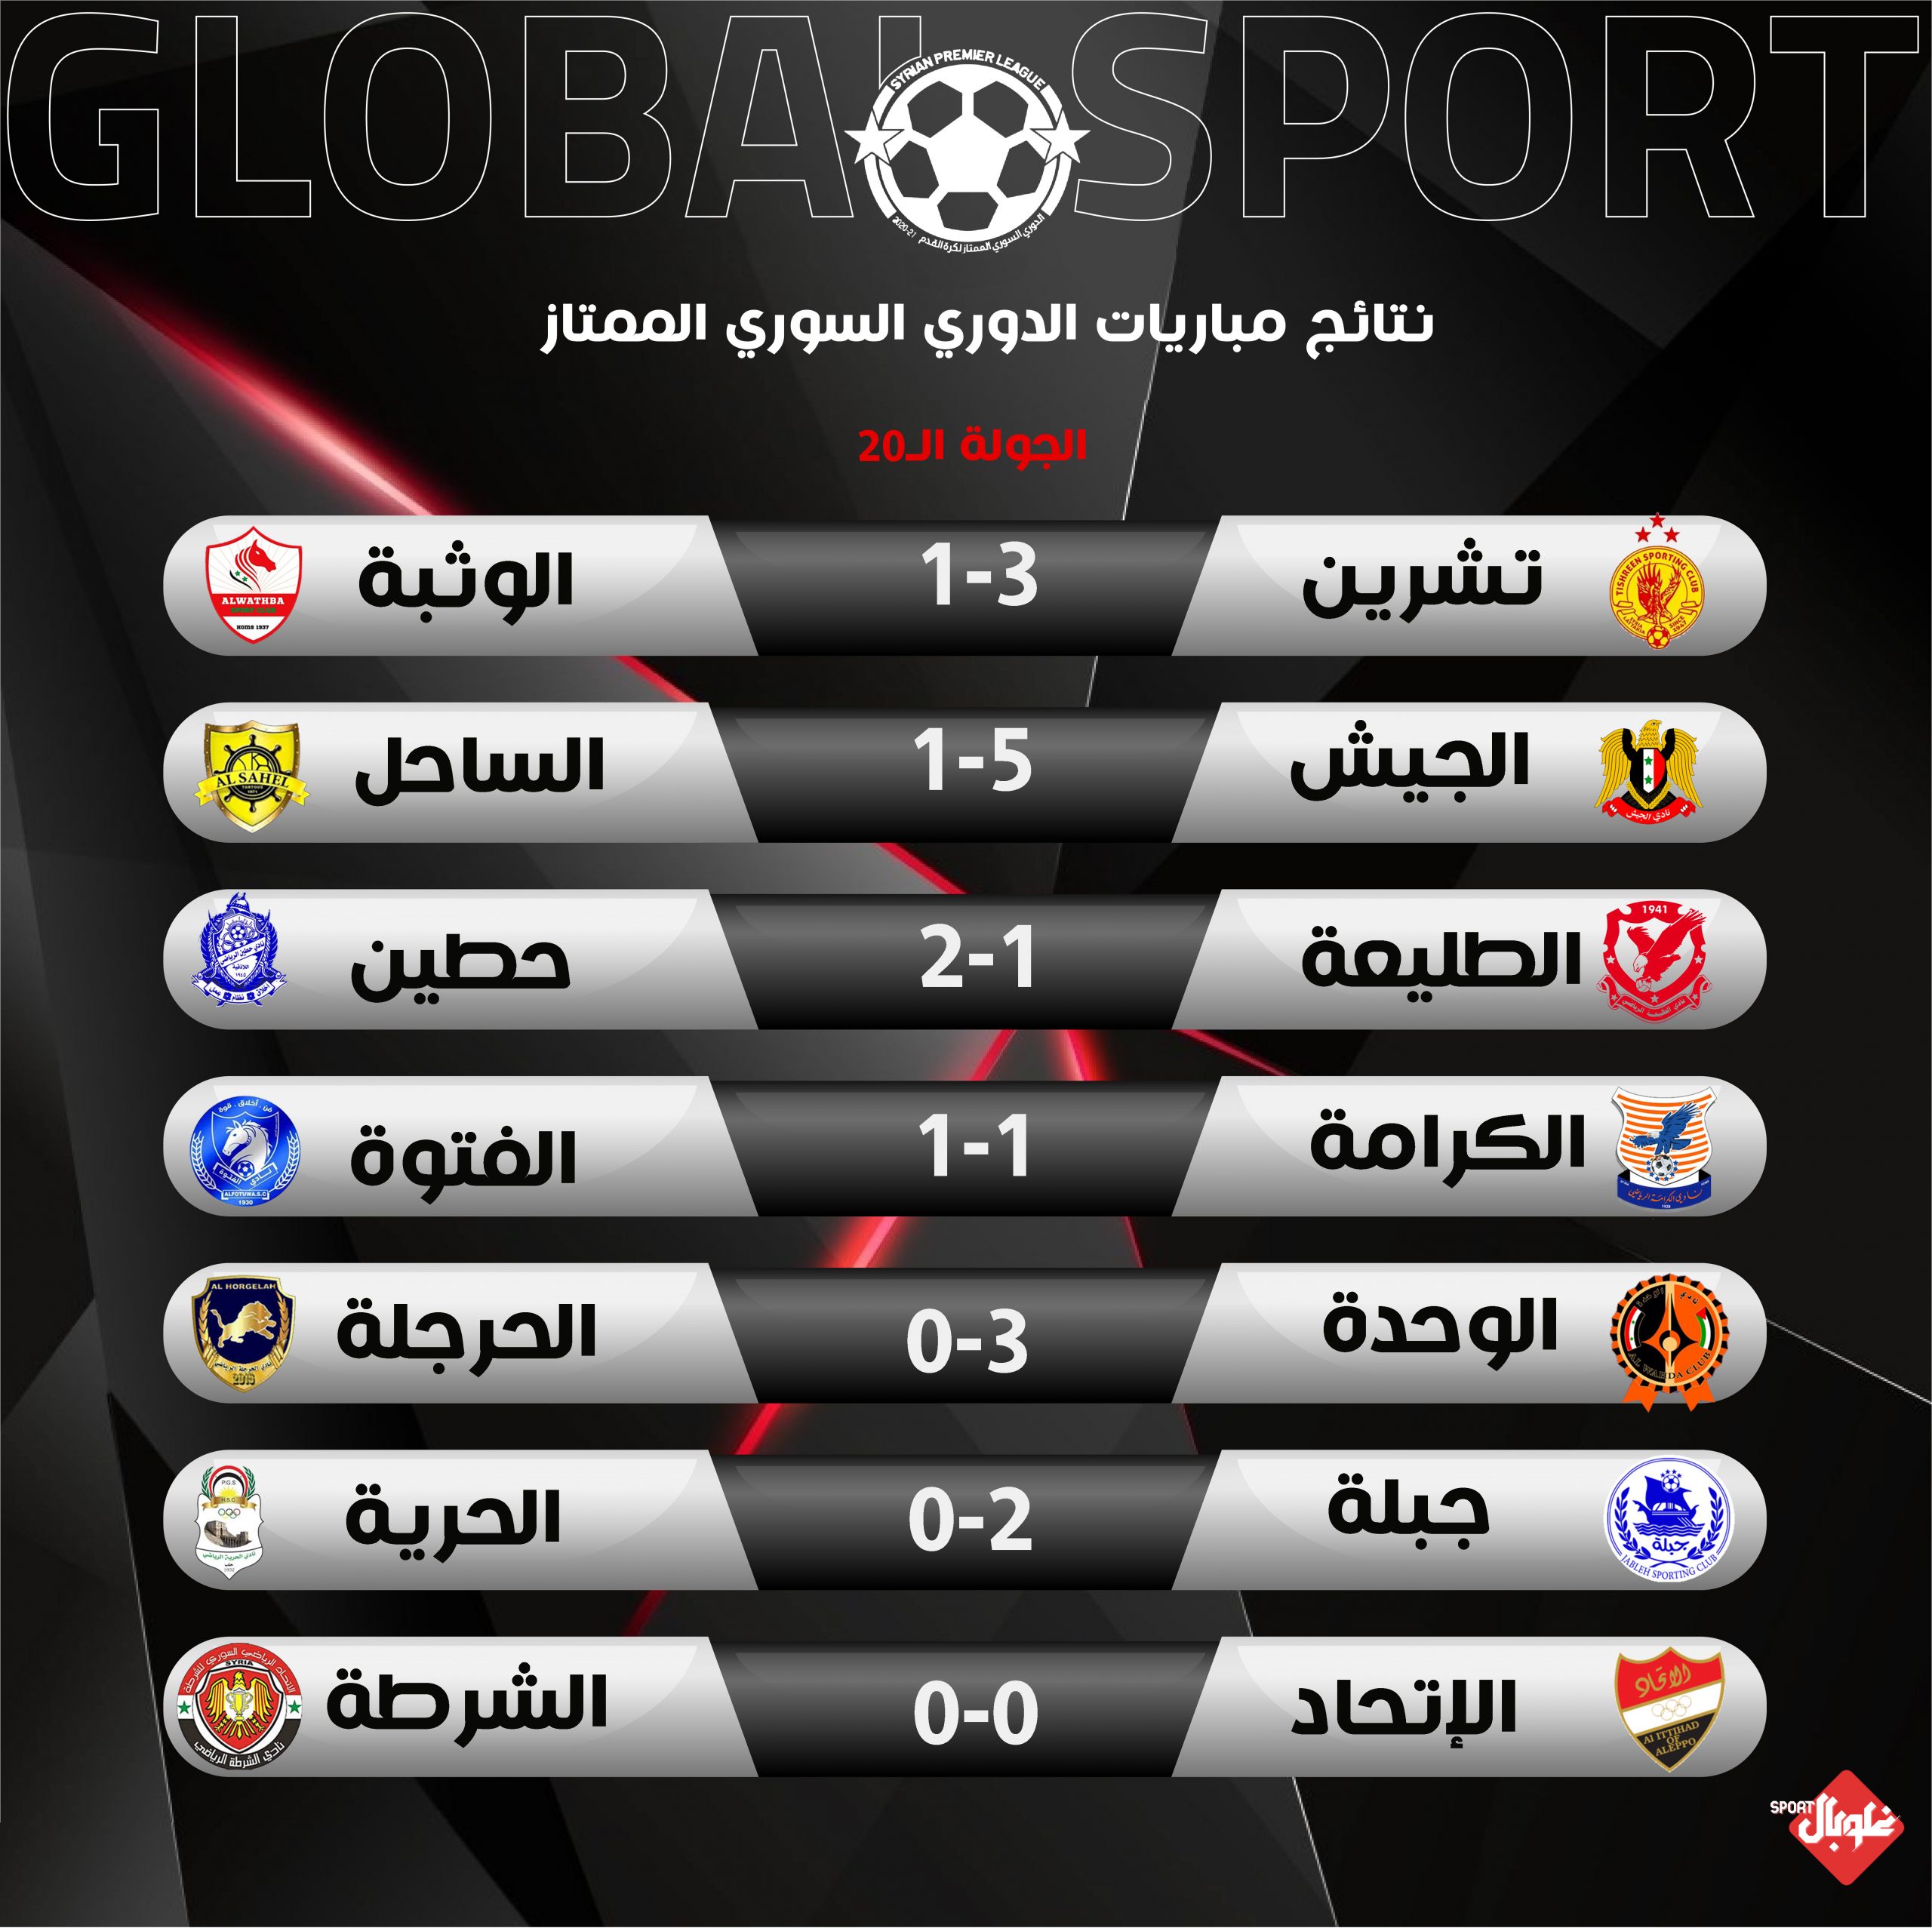 نتائج الجولة العشرون من الدوري السوري لكرة القدم